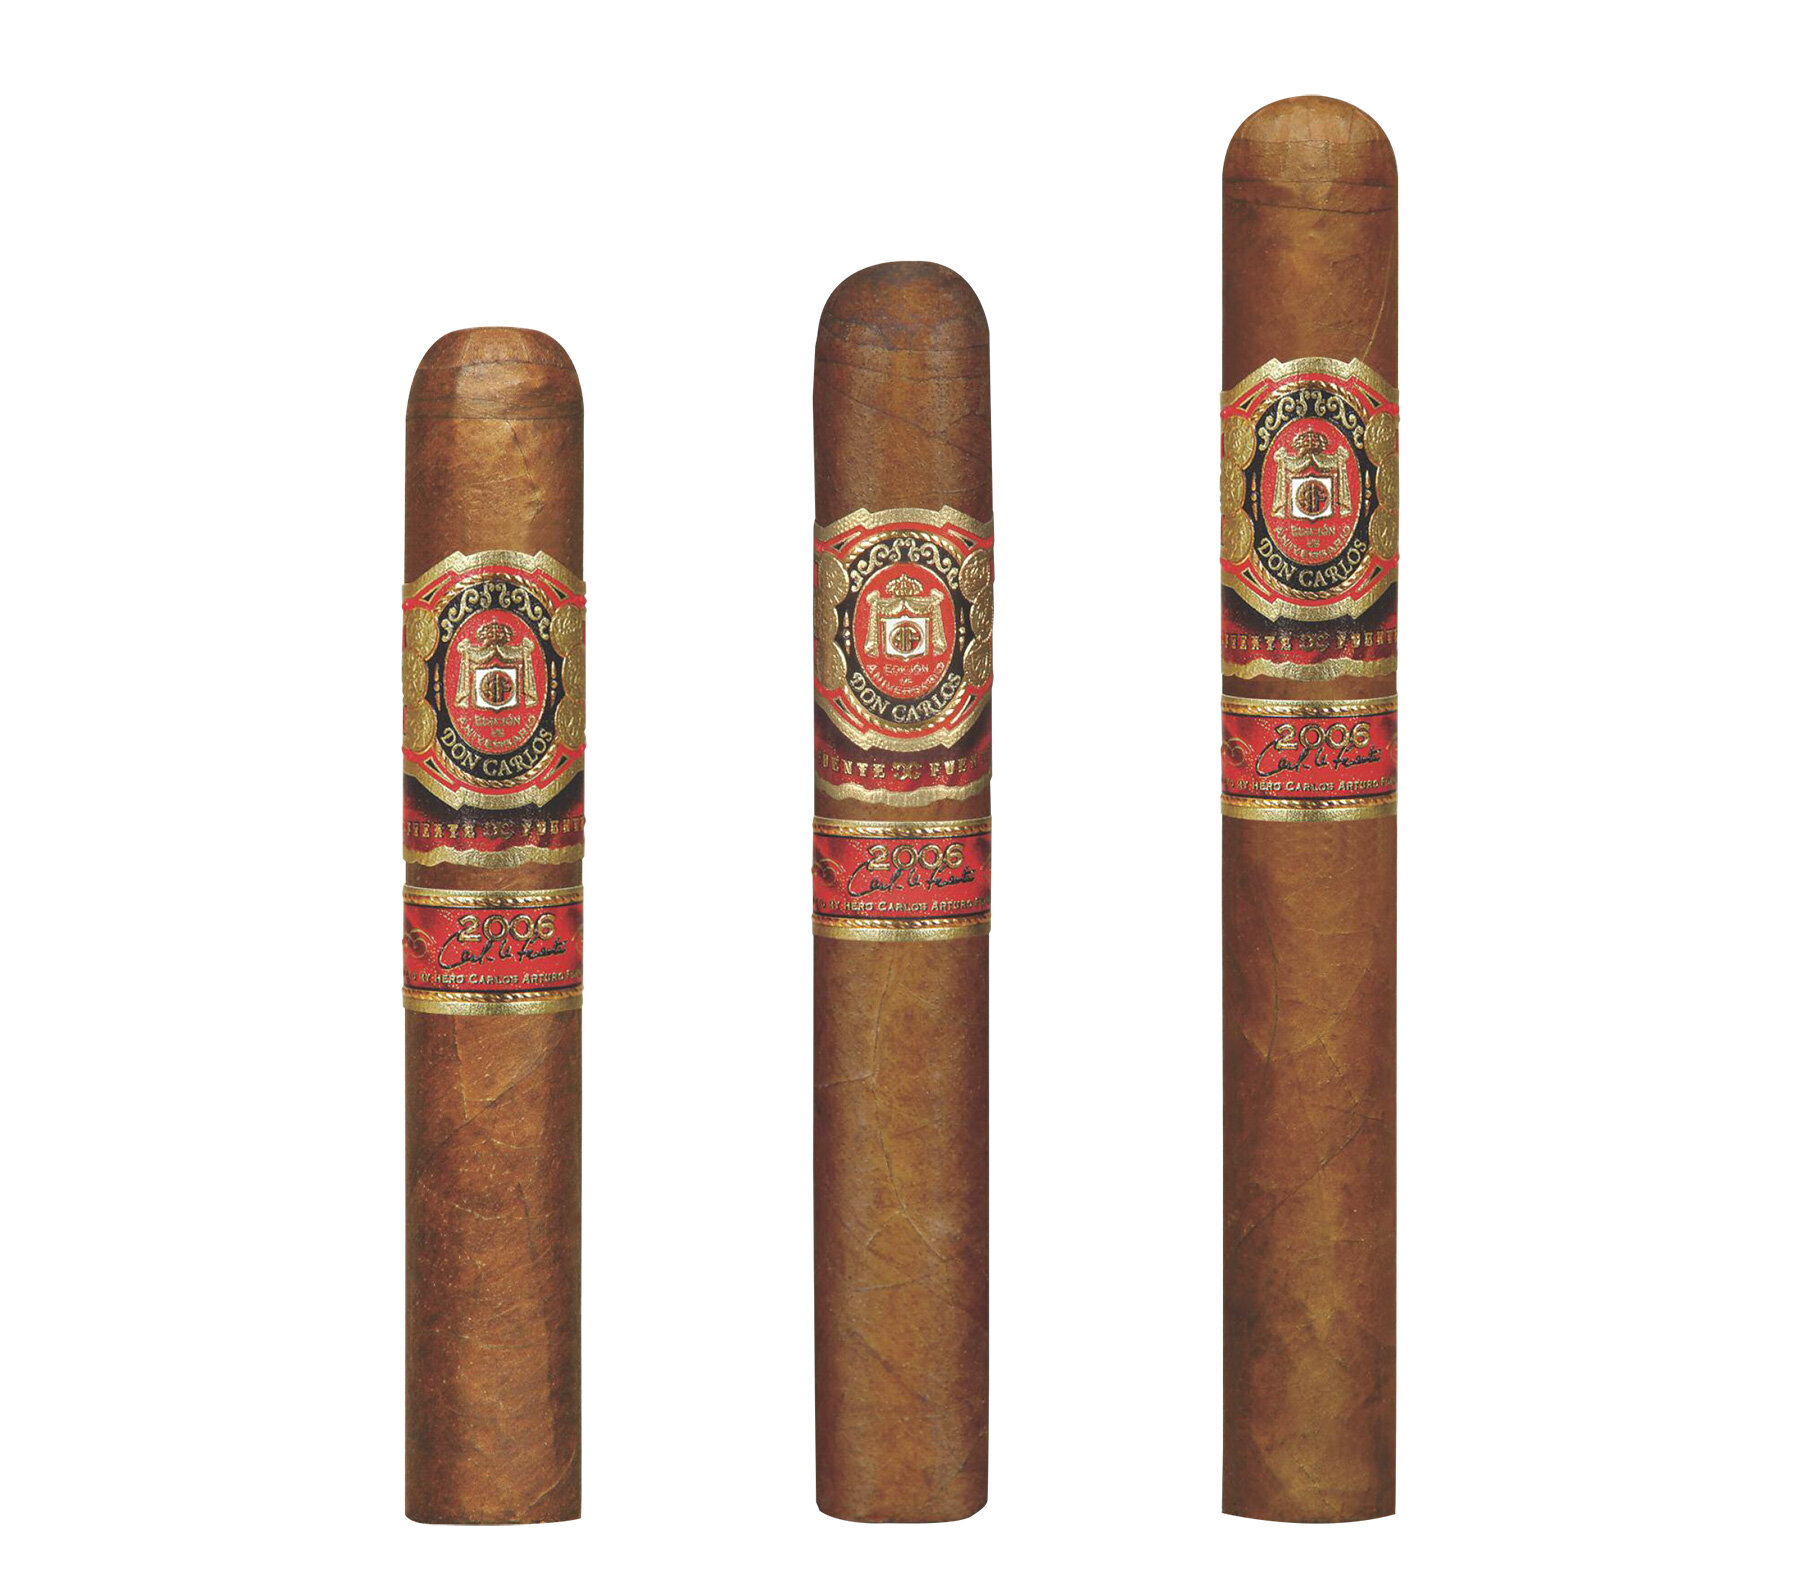 2006-don-carlos-humidors-cigars.jpg